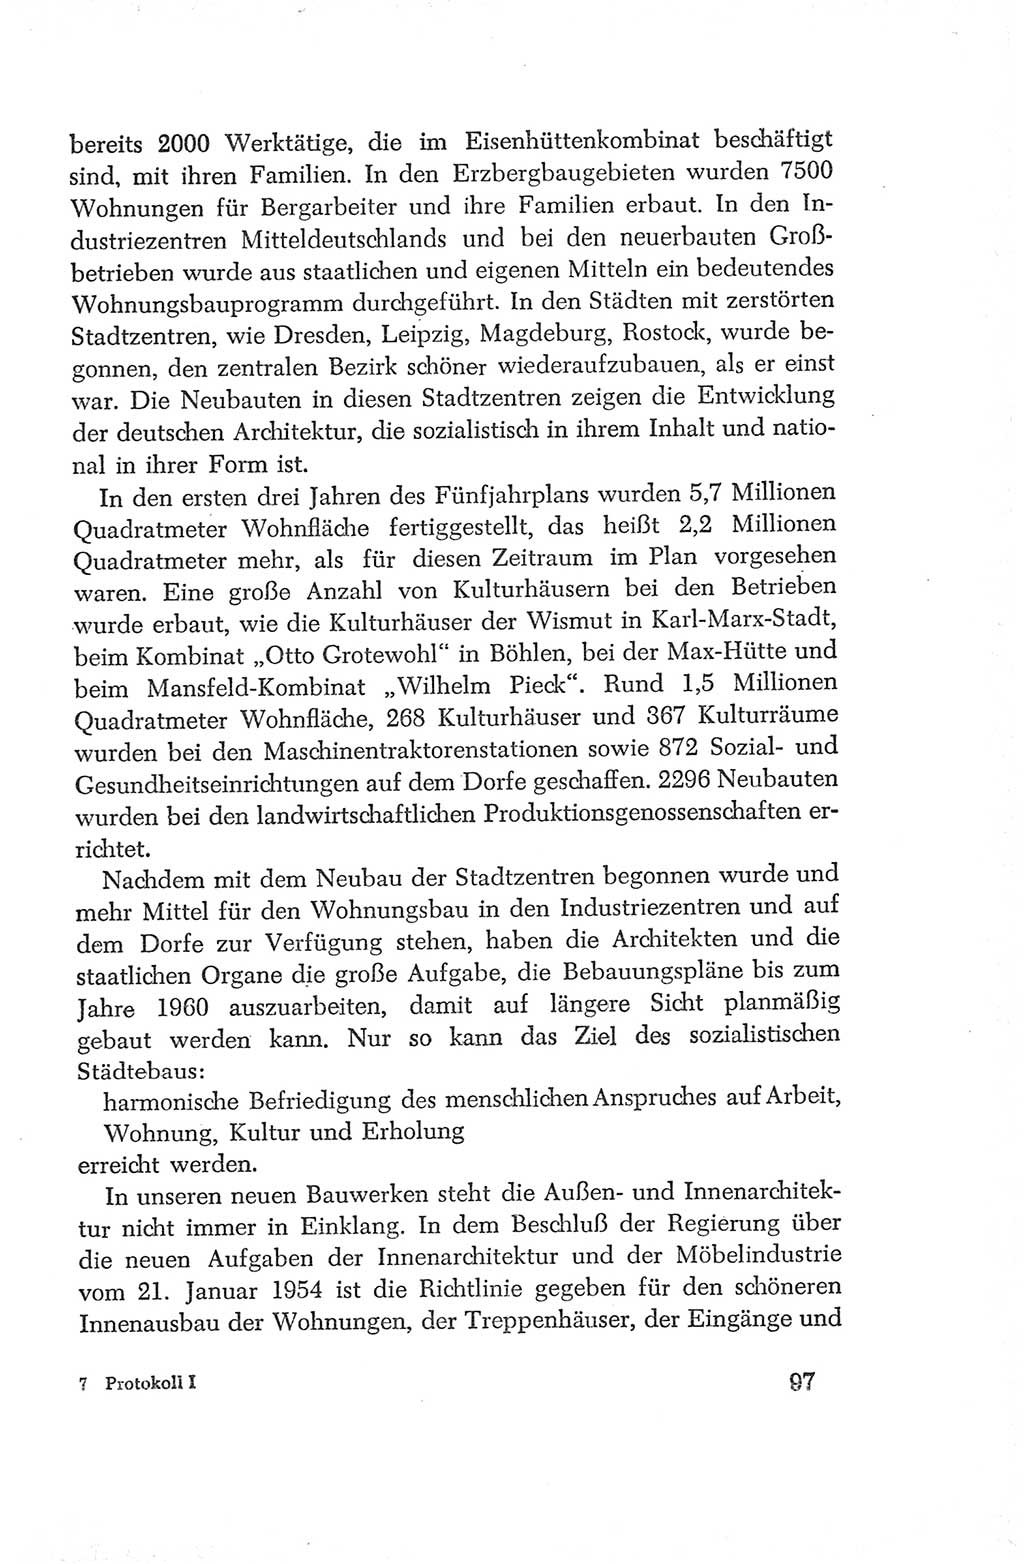 Protokoll der Verhandlungen des Ⅳ. Parteitages der Sozialistischen Einheitspartei Deutschlands (SED) [Deutsche Demokratische Republik (DDR)] 1954, Seite 97